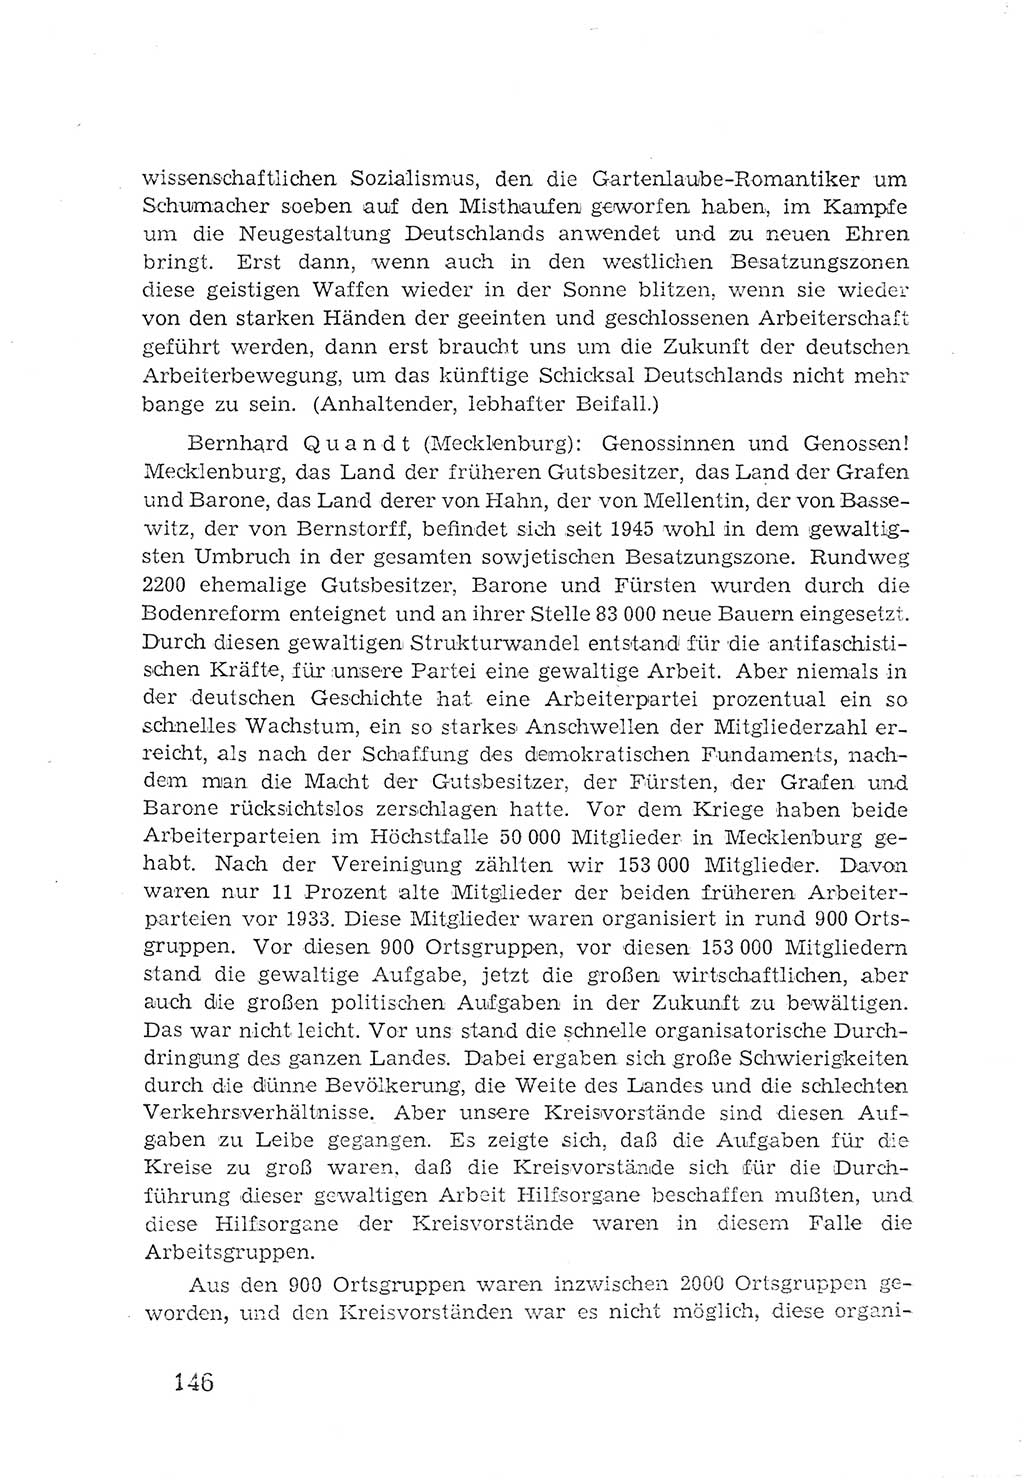 Protokoll der Verhandlungen des 2. Parteitages der Sozialistischen Einheitspartei Deutschlands (SED) [Sowjetische Besatzungszone (SBZ) Deutschlands] 1947, Seite 146 (Prot. Verh. 2. PT SED SBZ Dtl. 1947, S. 146)